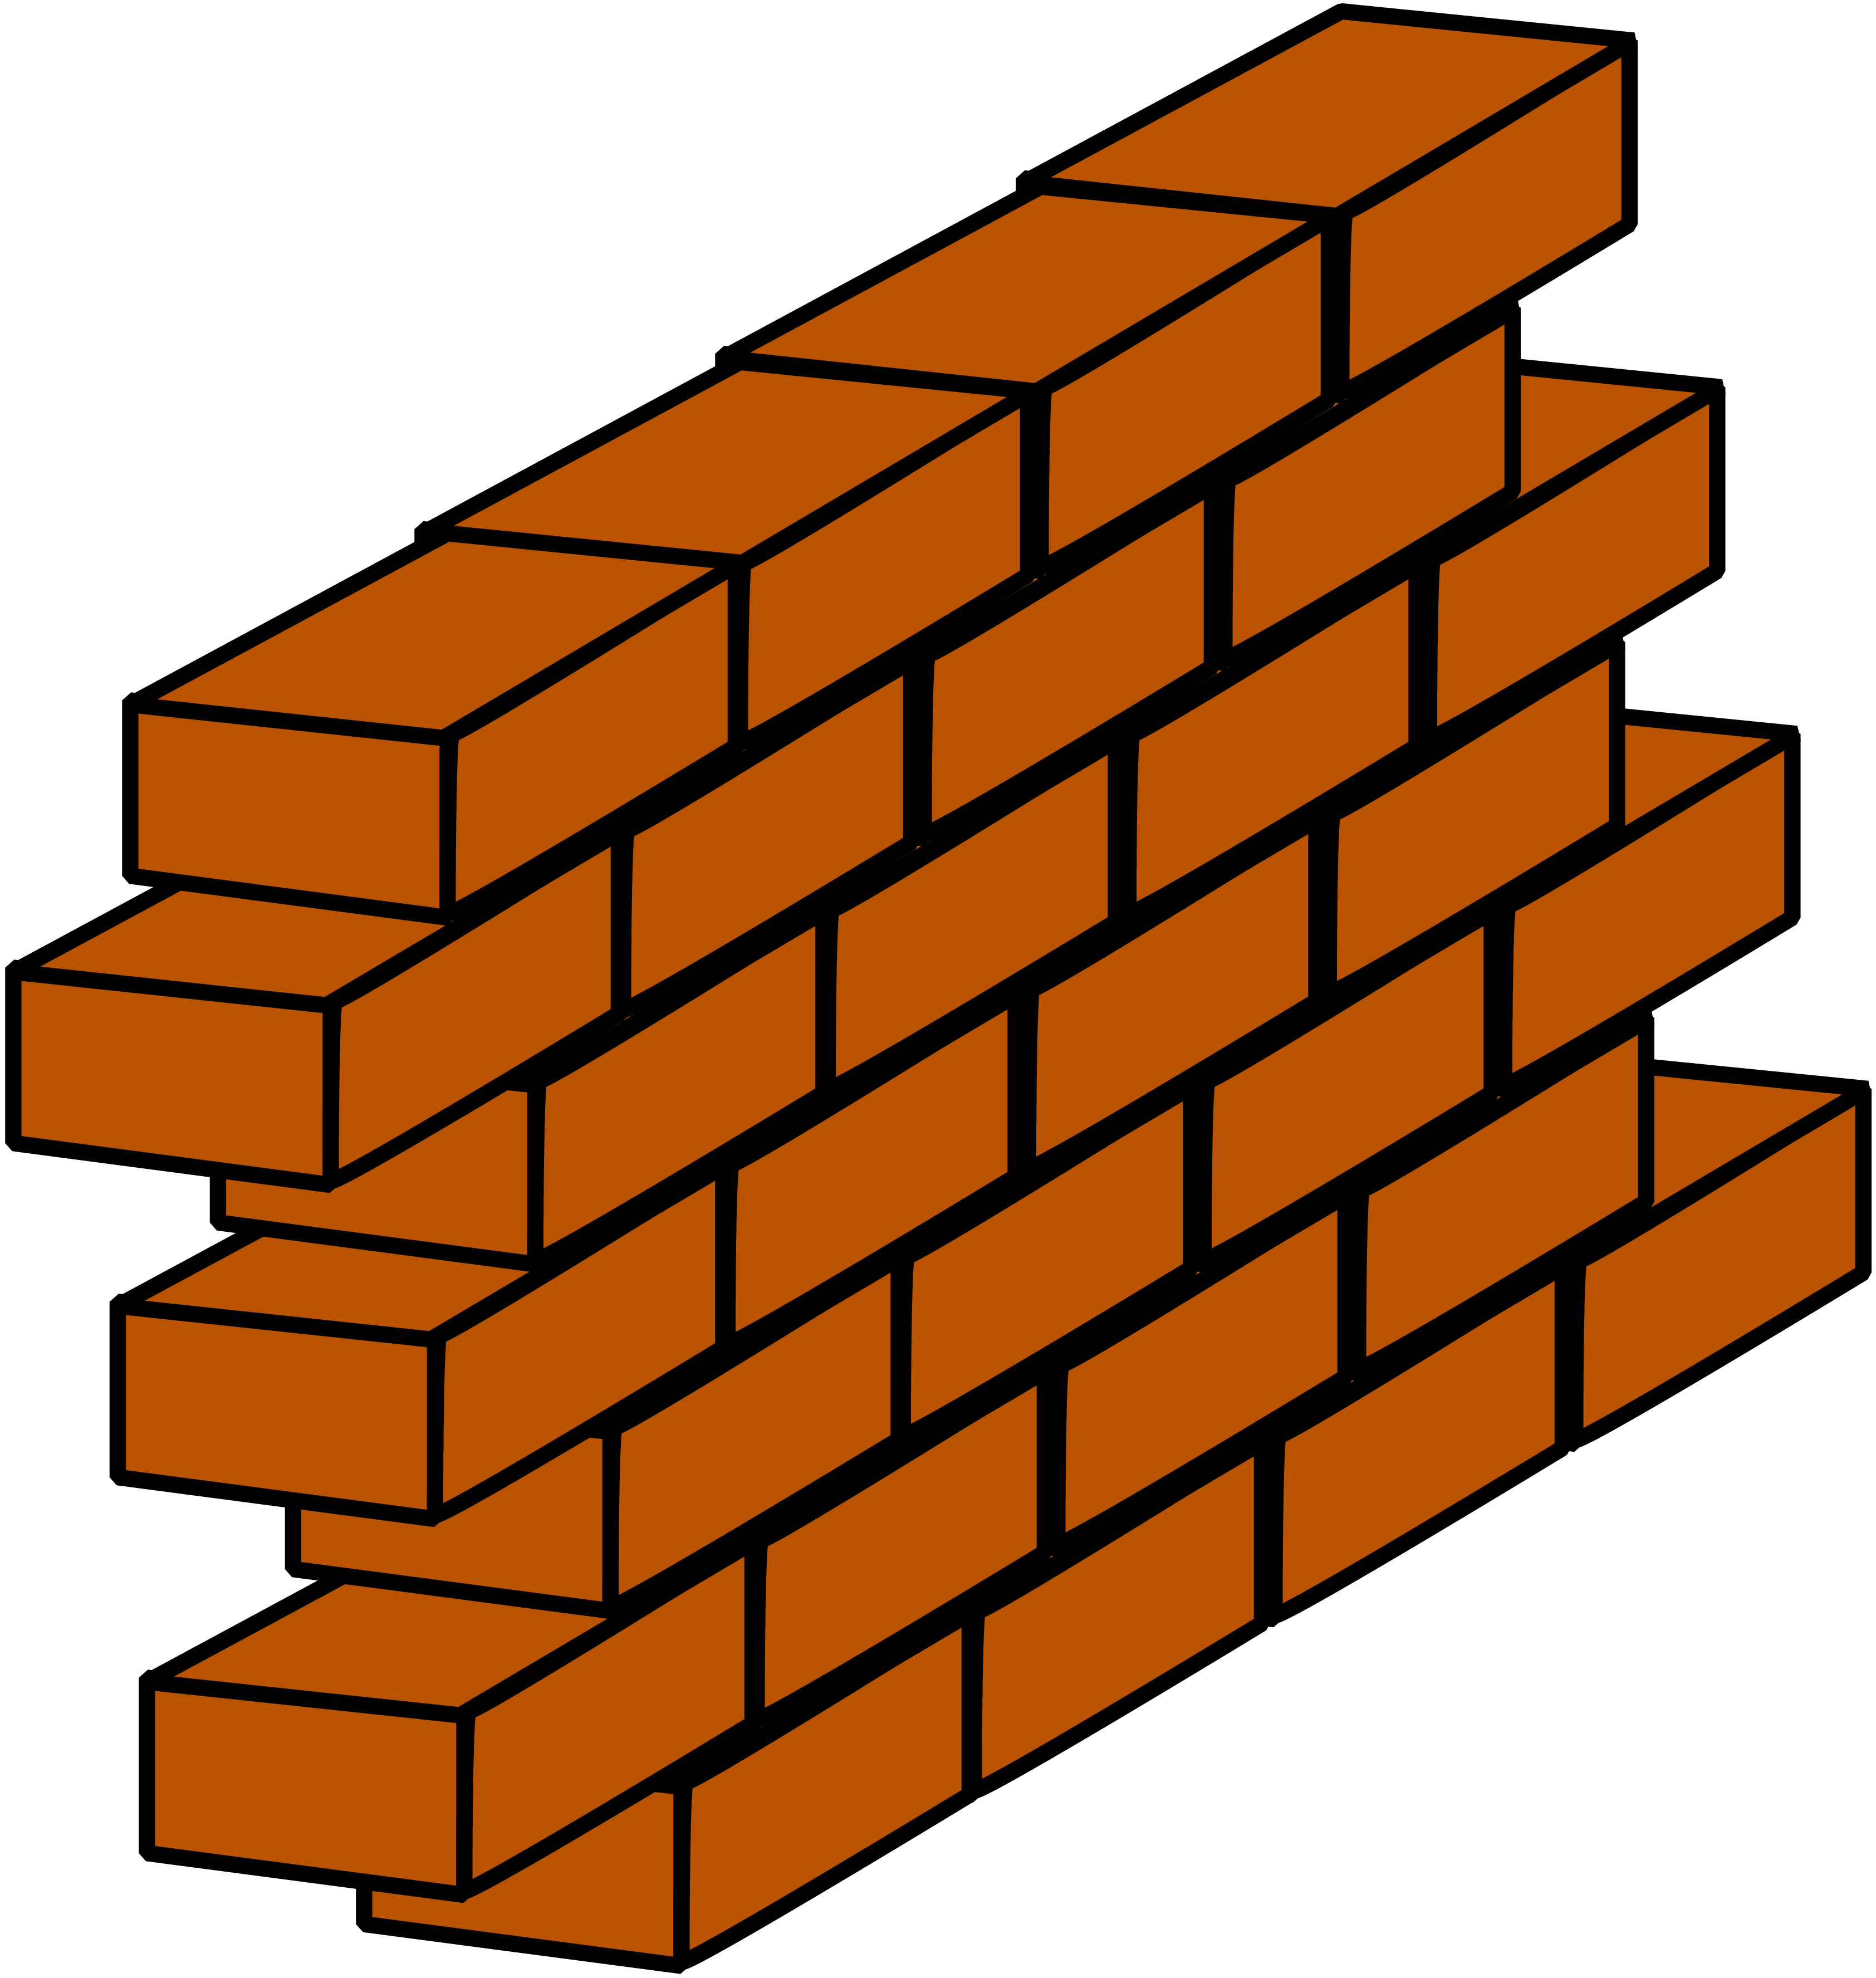 Brick Wall With No Words Clip